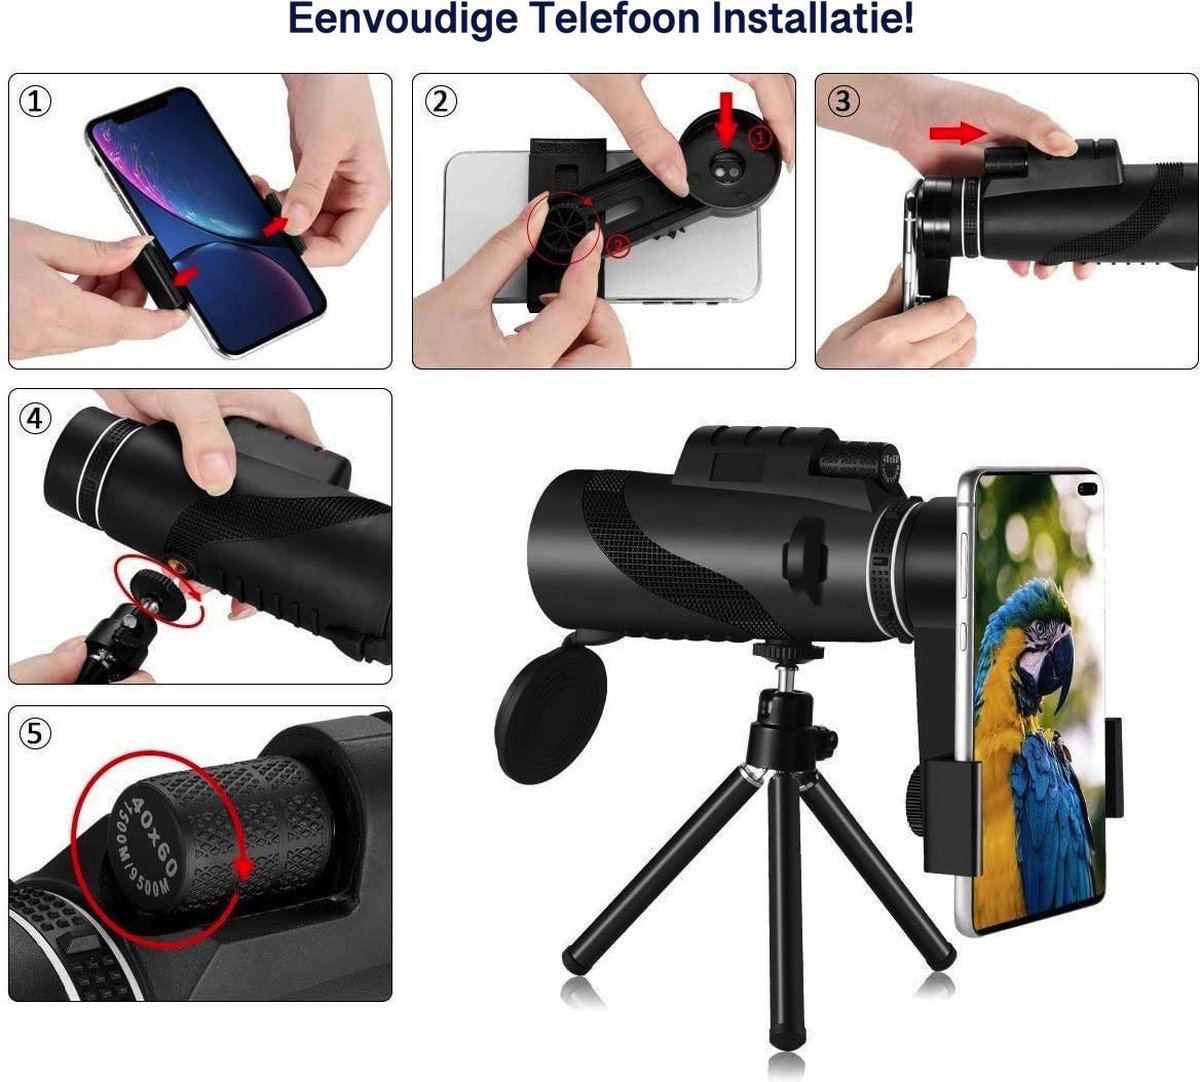 chasse SLKIJDHFB Télescope monoculaire HD 40 x 60 avec trépied et support pour smartphone camping tourisme pour observation